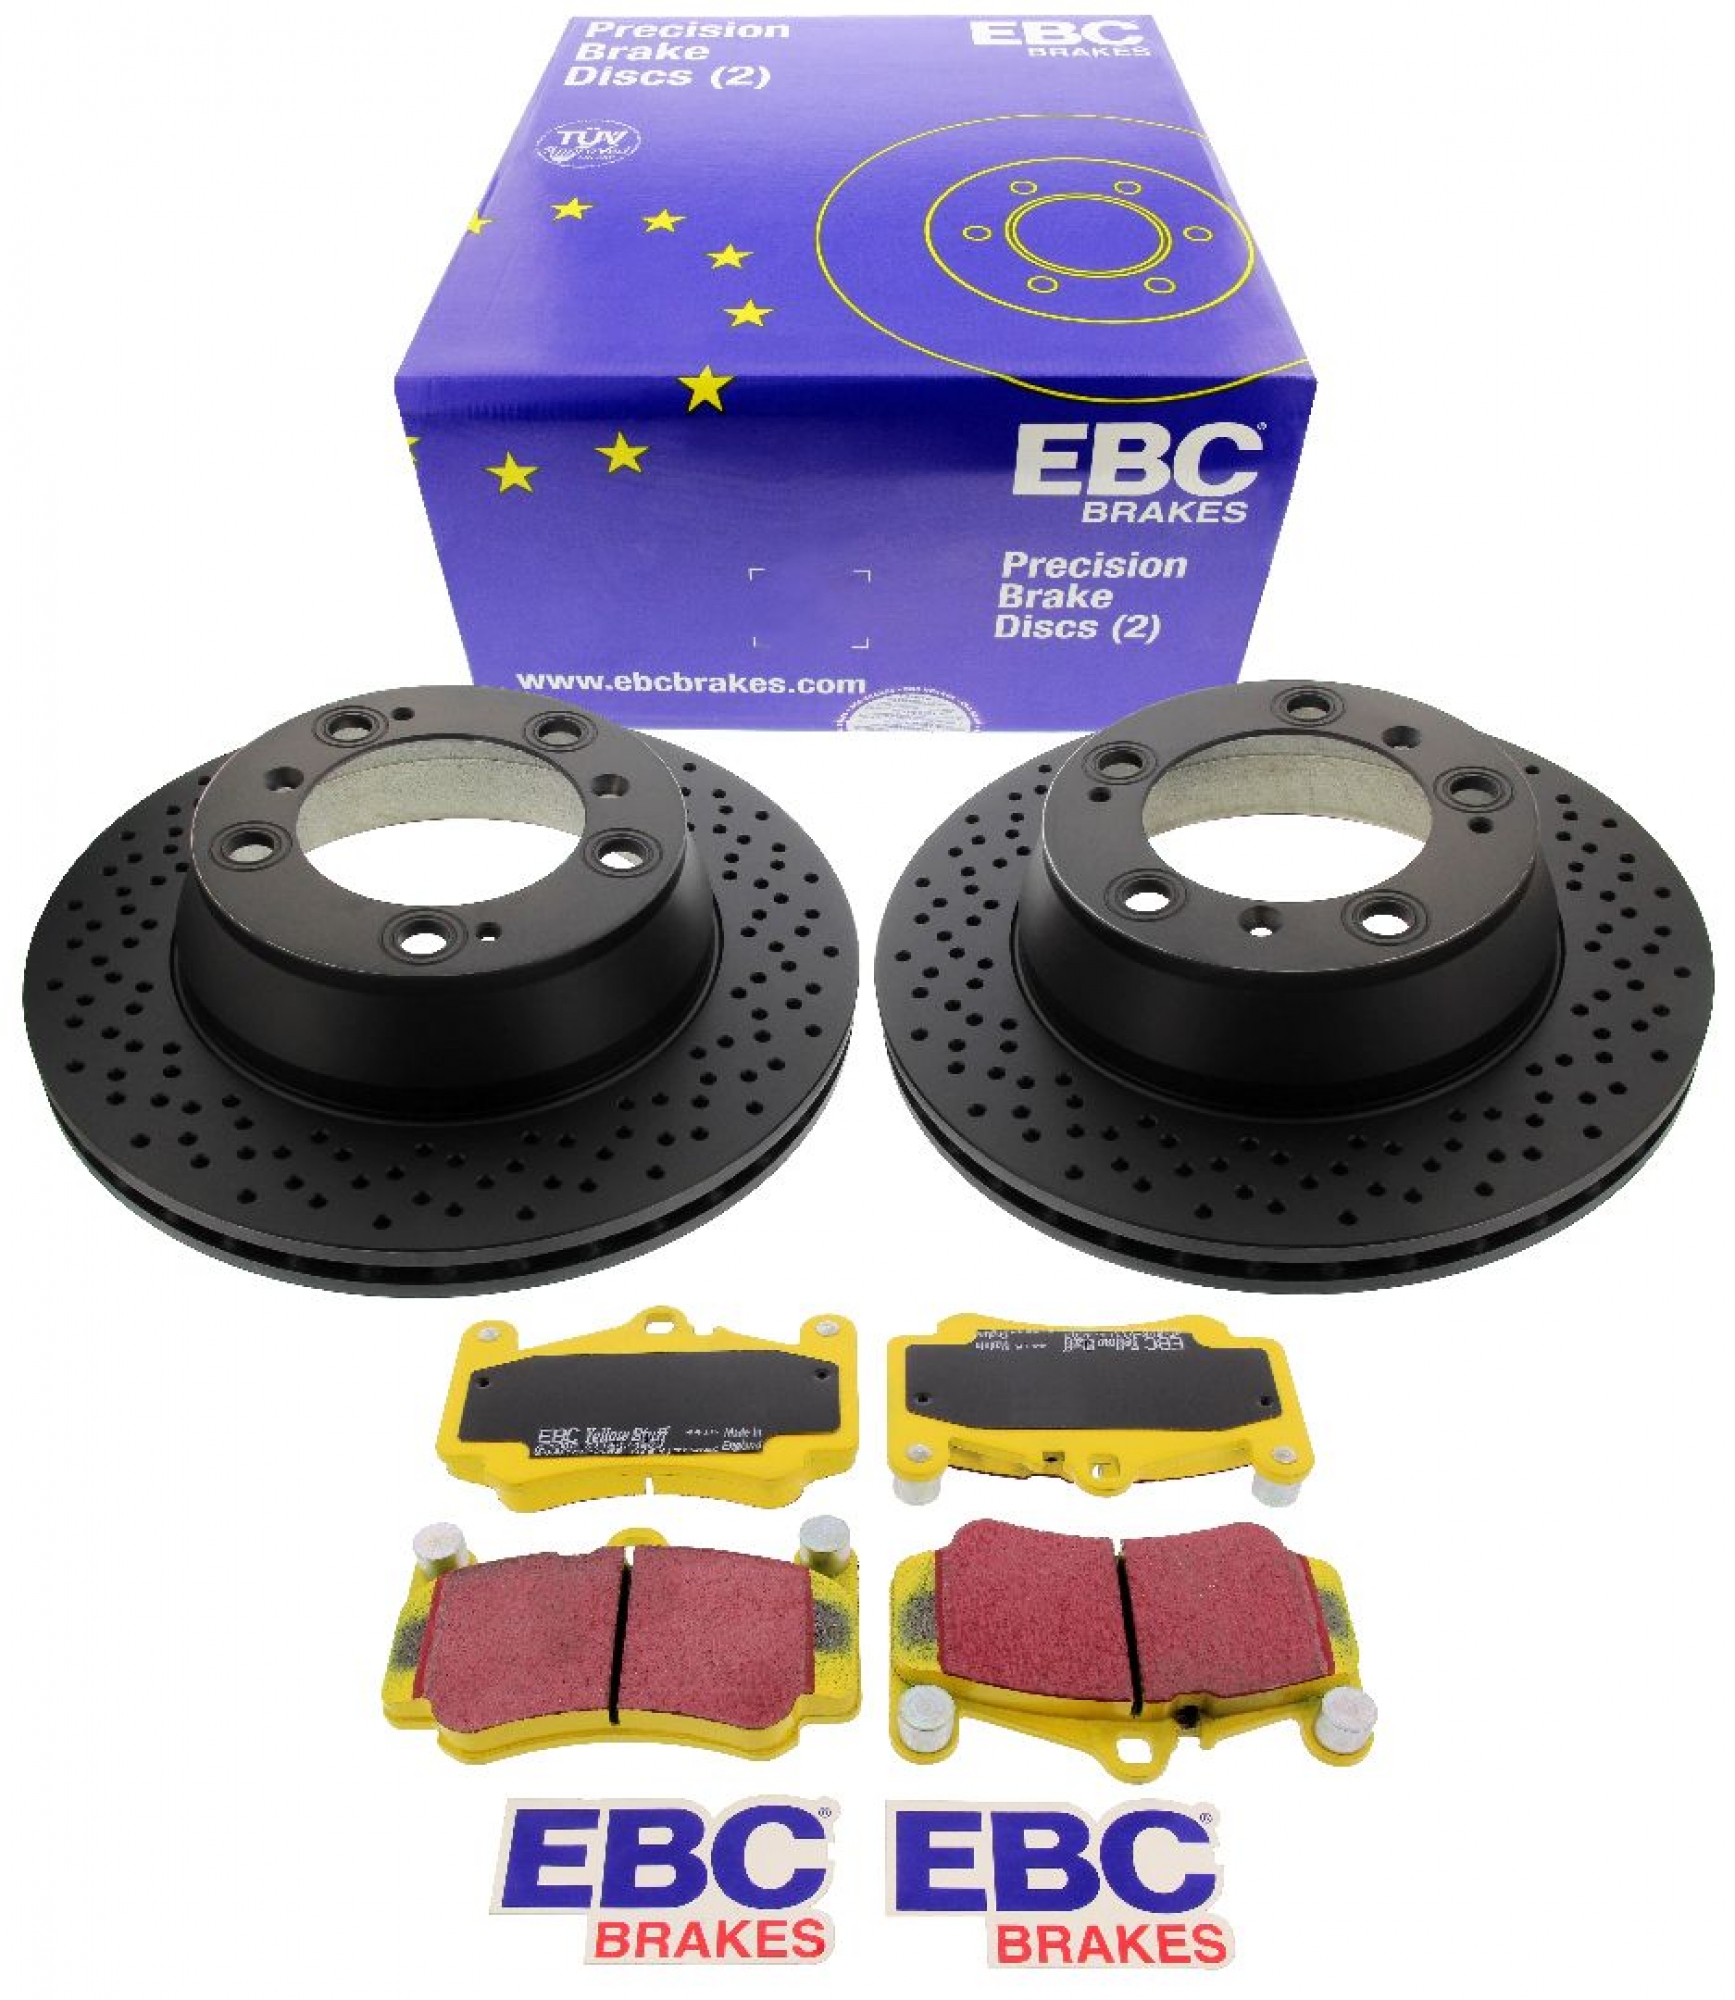 EBC-Bremsensatz, Premium Sportbremsscheiben (gelocht) + Bremsbeläge, Yellowstuff, Achssatz, VA, Porsche 911